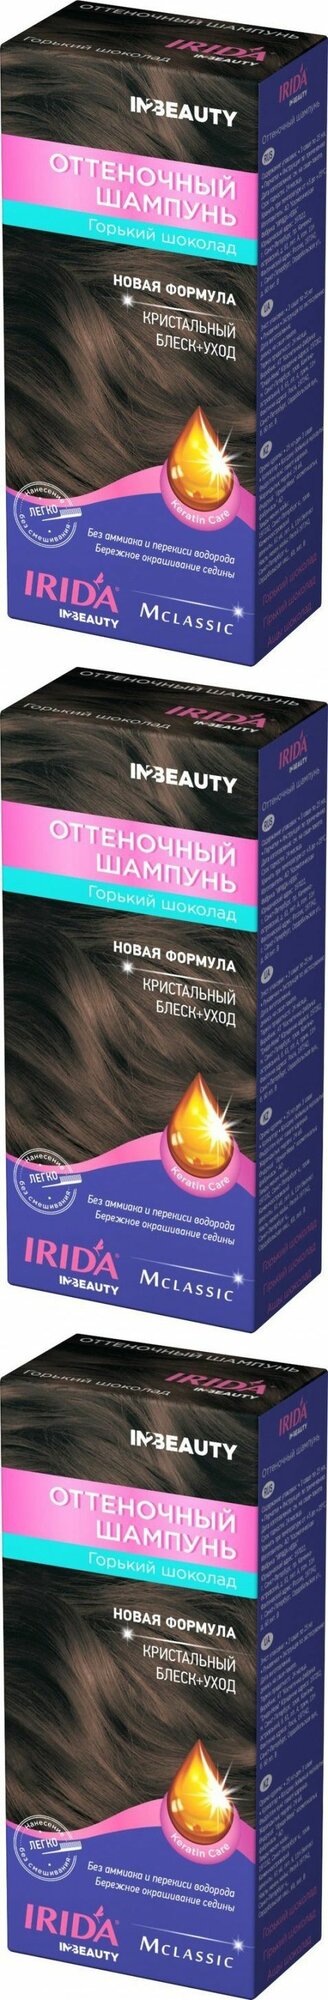 IRIDA Шампунь для волос Классик, горький шоколад, оттеночный, 75 мл, 3 шт.